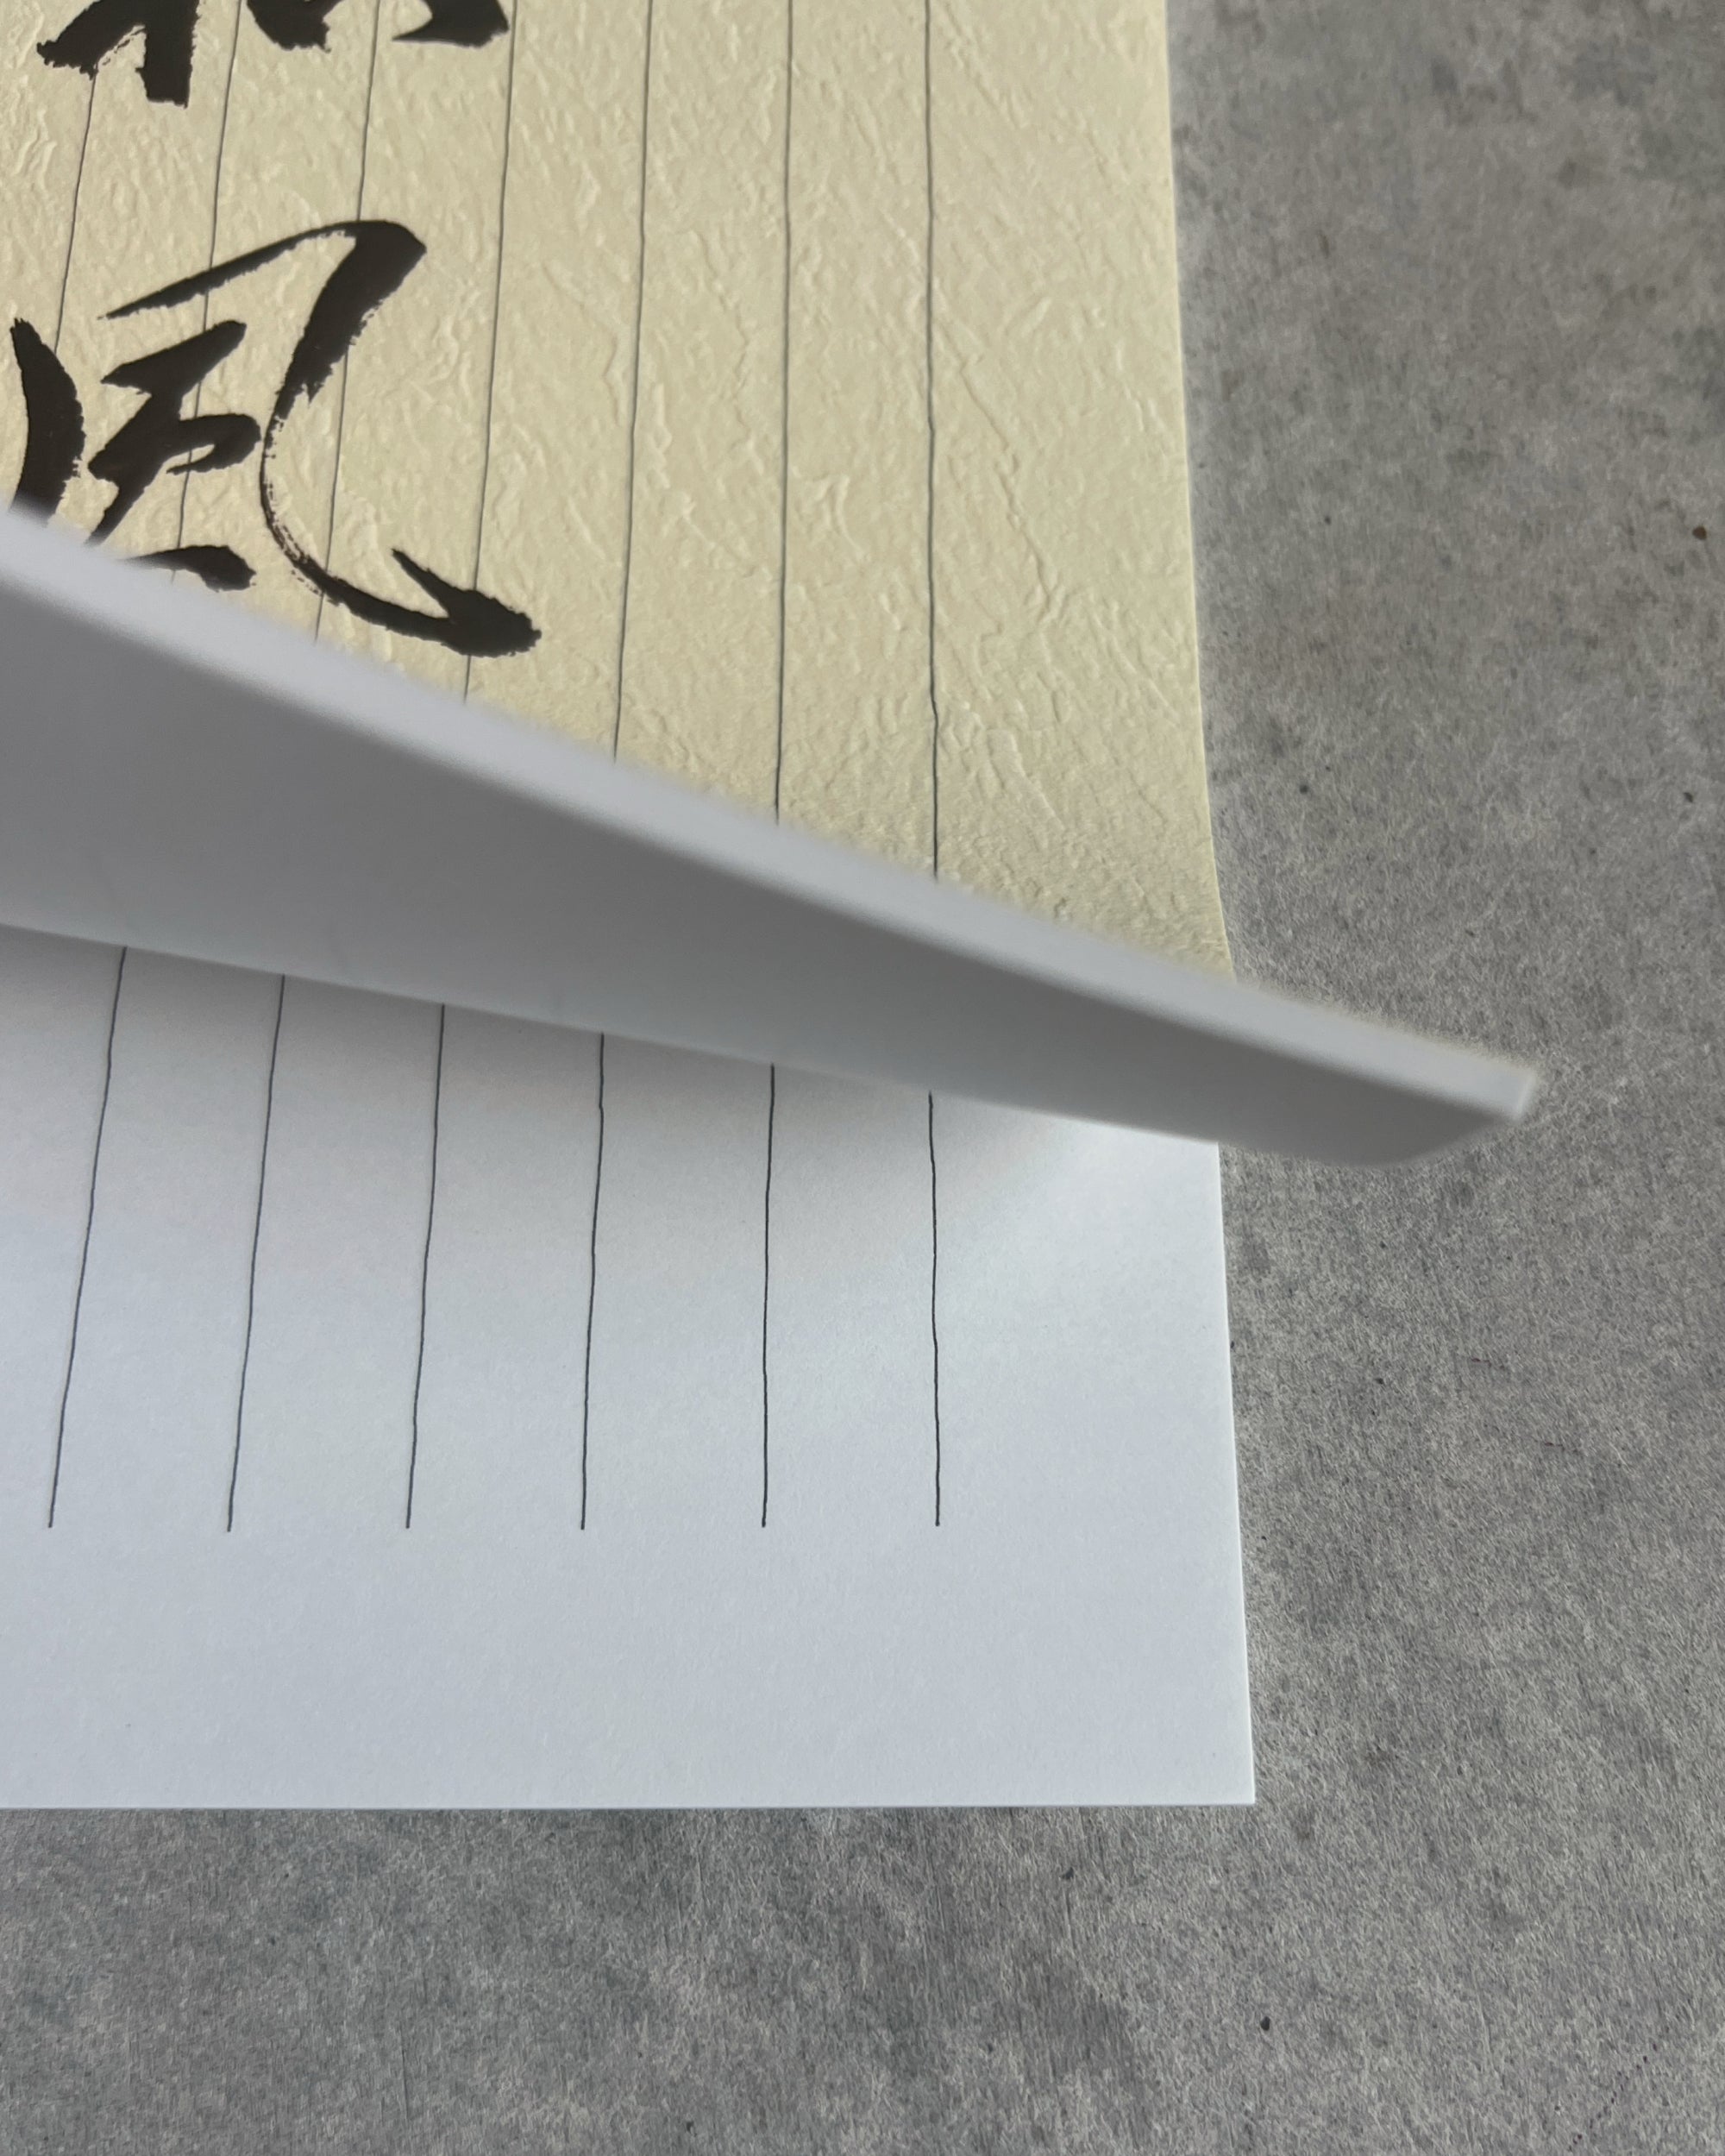 Yamato : letter-writing pad